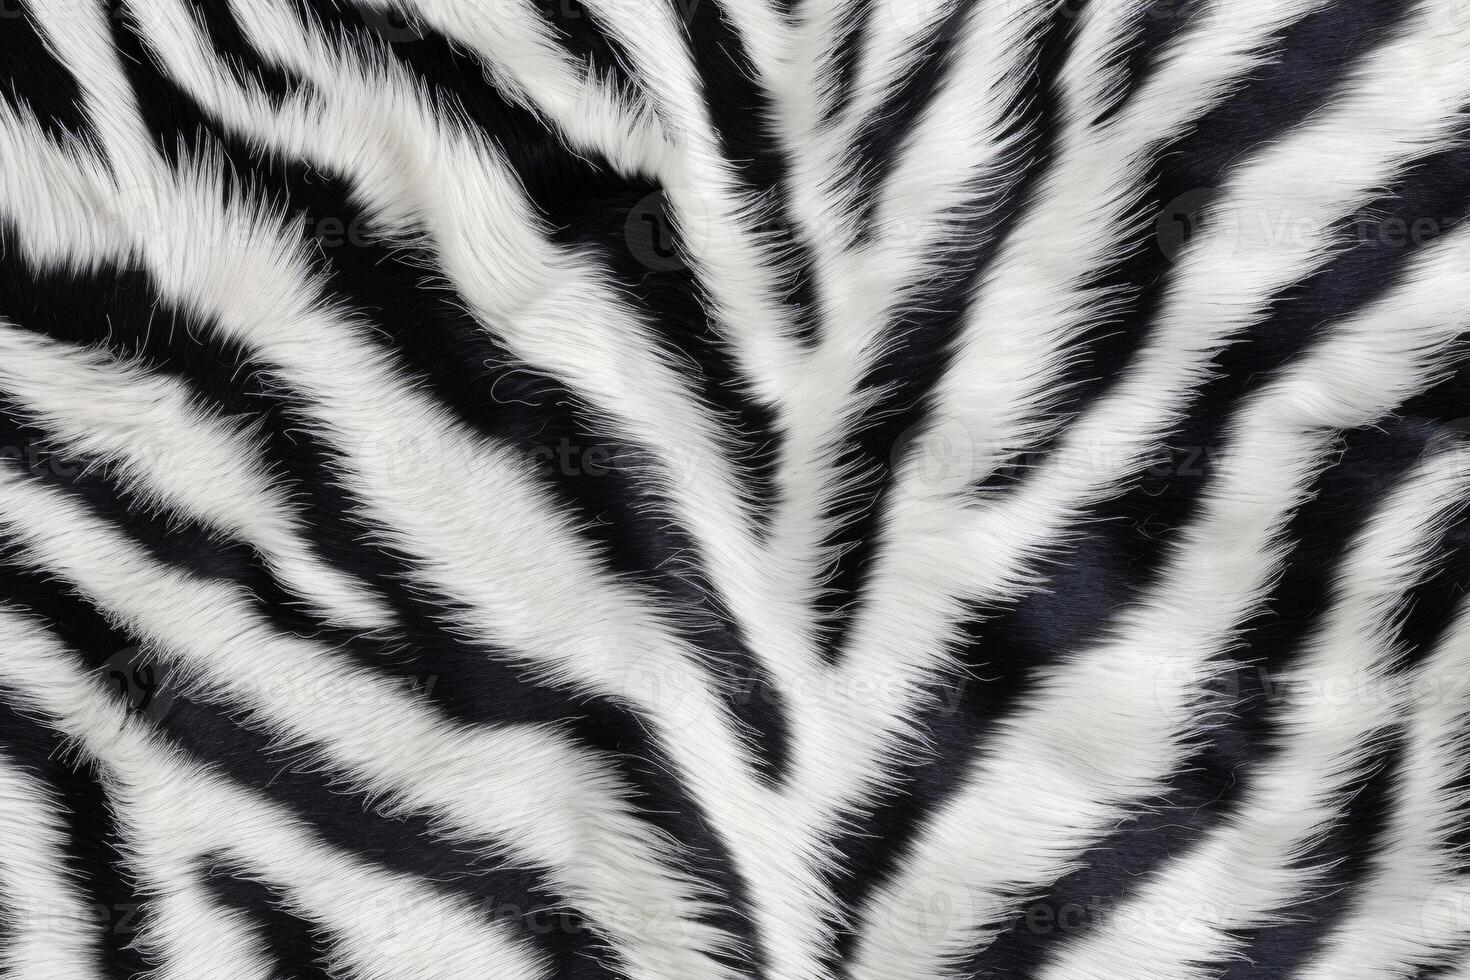 zebra huid vacht textuur, zebra vacht achtergrond, pluizig zebra huid vacht textuur, zebra huid vacht patroon, dier huid vacht textuur, zebra afdrukken, foto